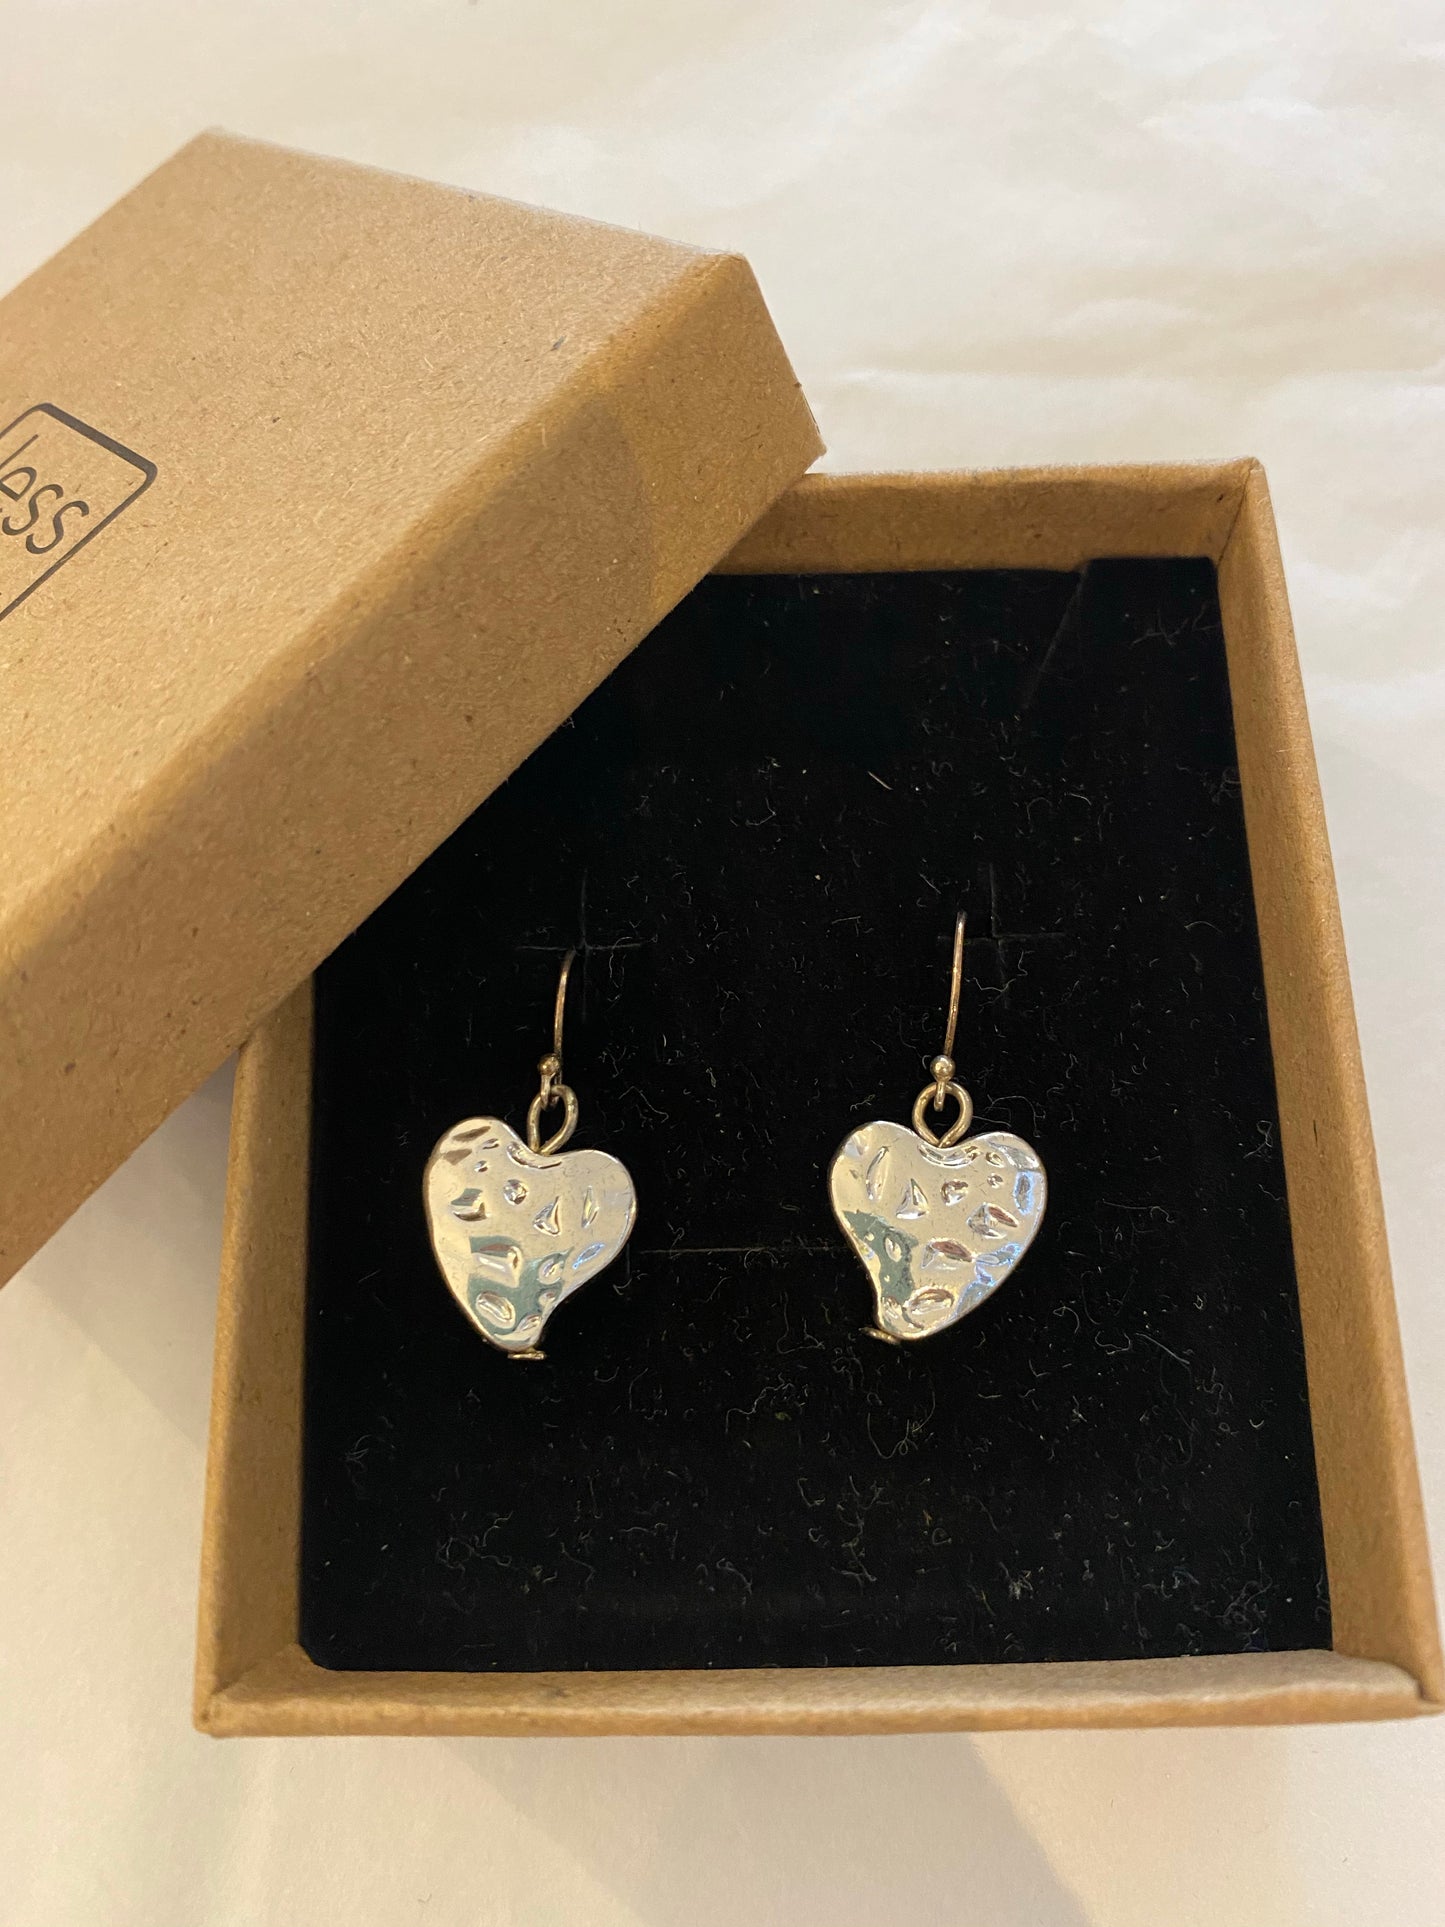 Earrings - Love Island Heart Earrings Silver